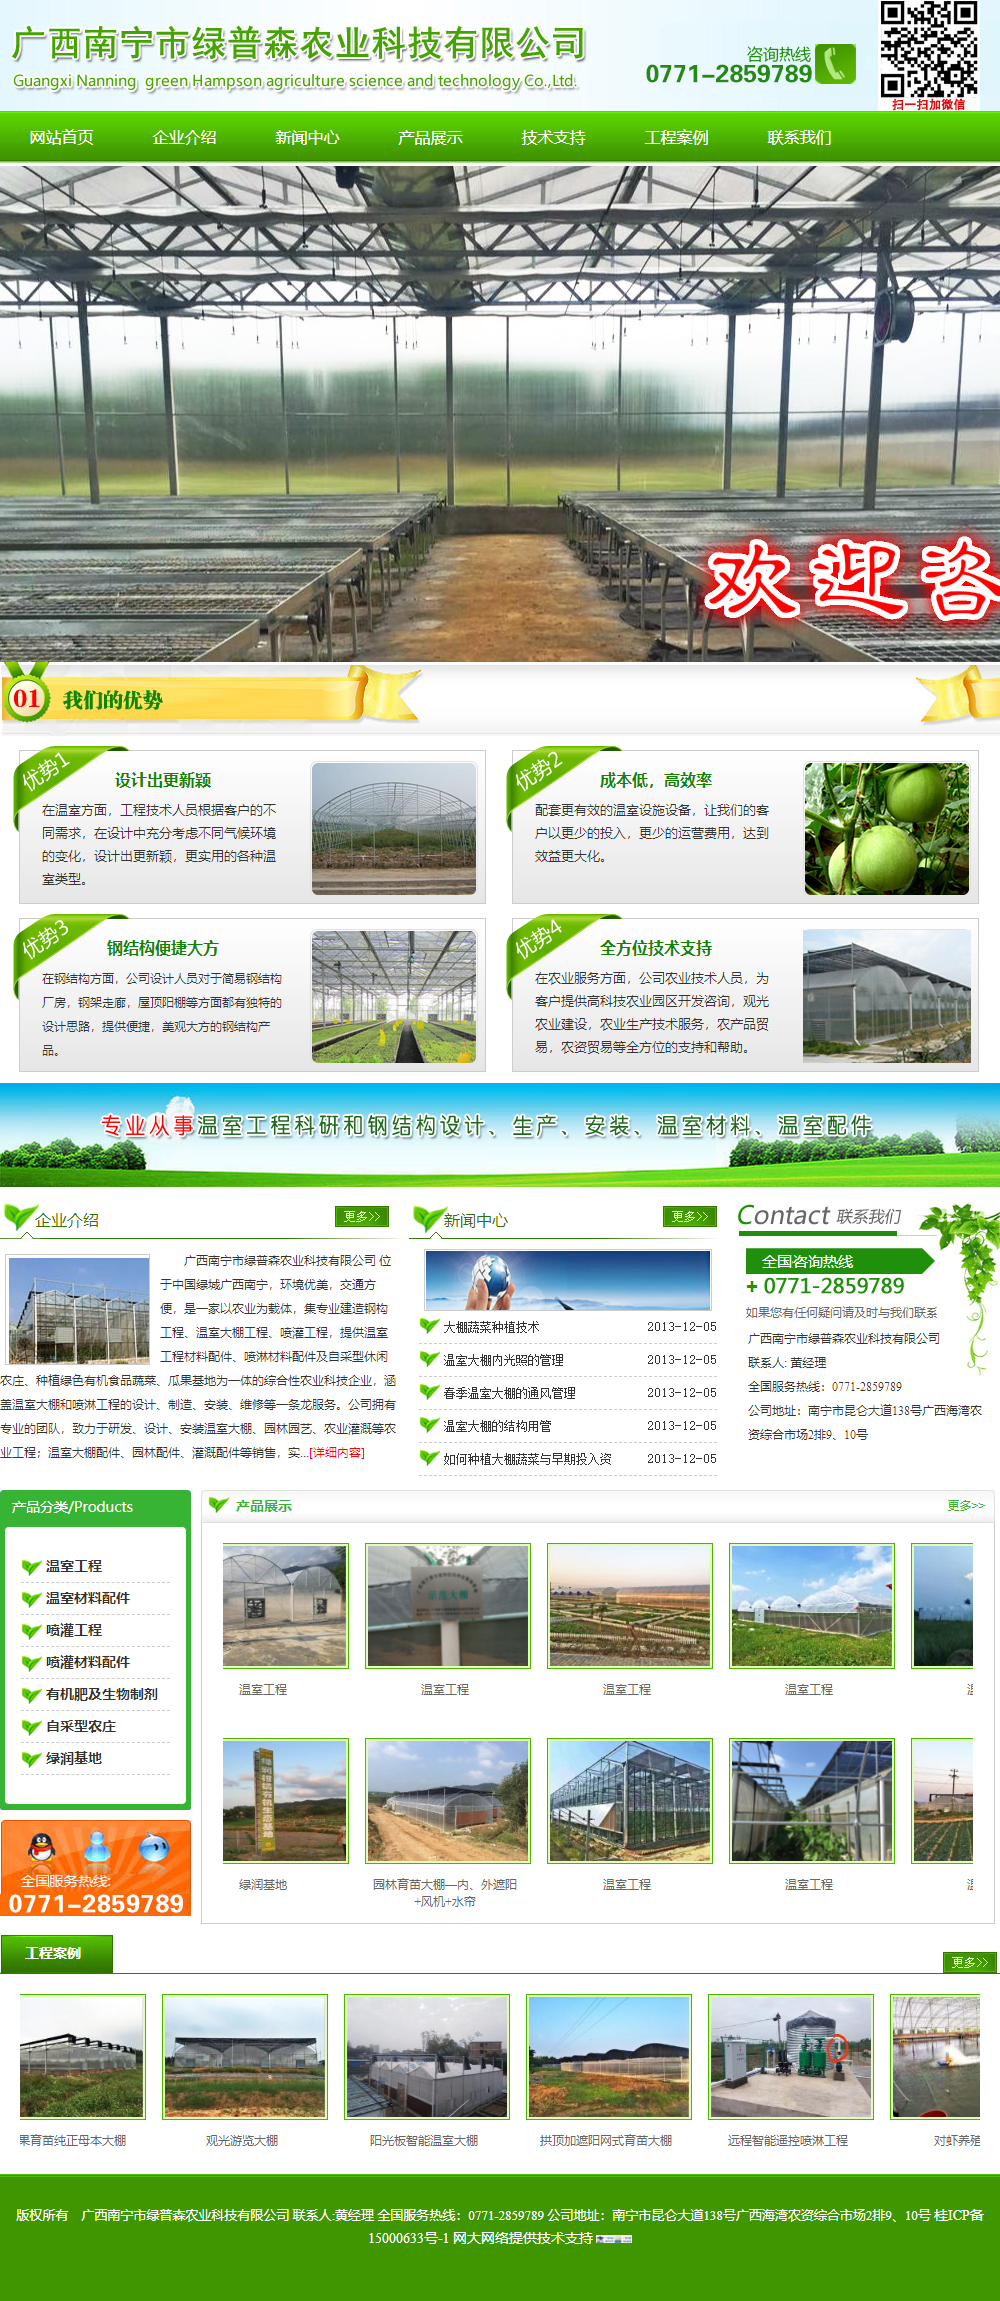 广西南宁市绿普森农业科技有限公司网站案例